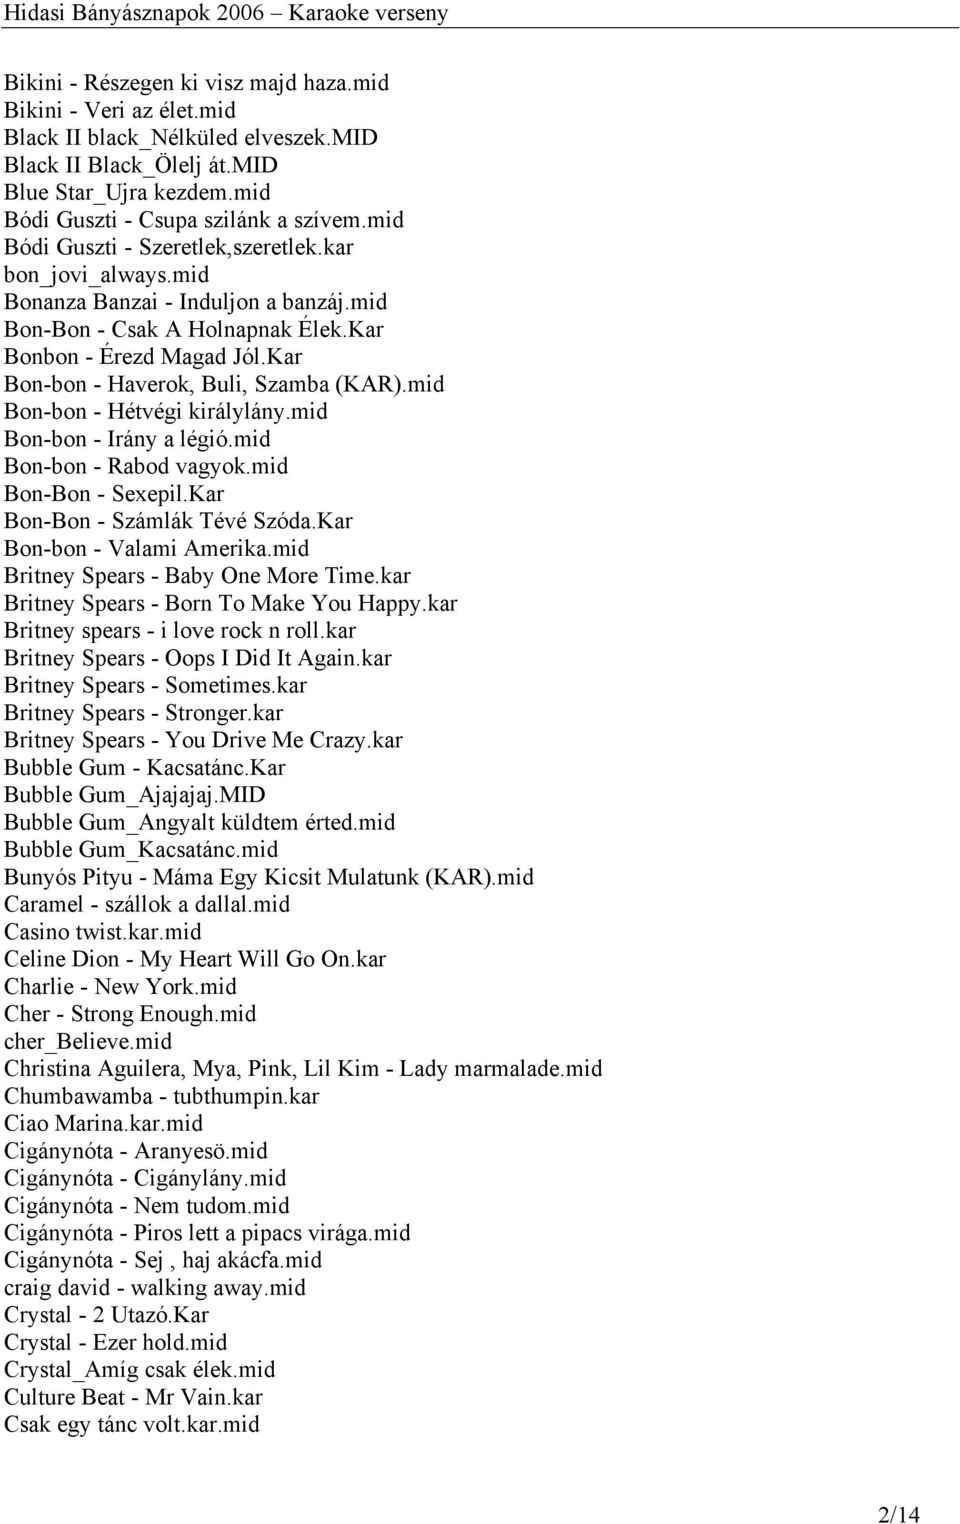 Vegyes zenék track-listája a Karaoke versenyhez - PDF Ingyenes letöltés